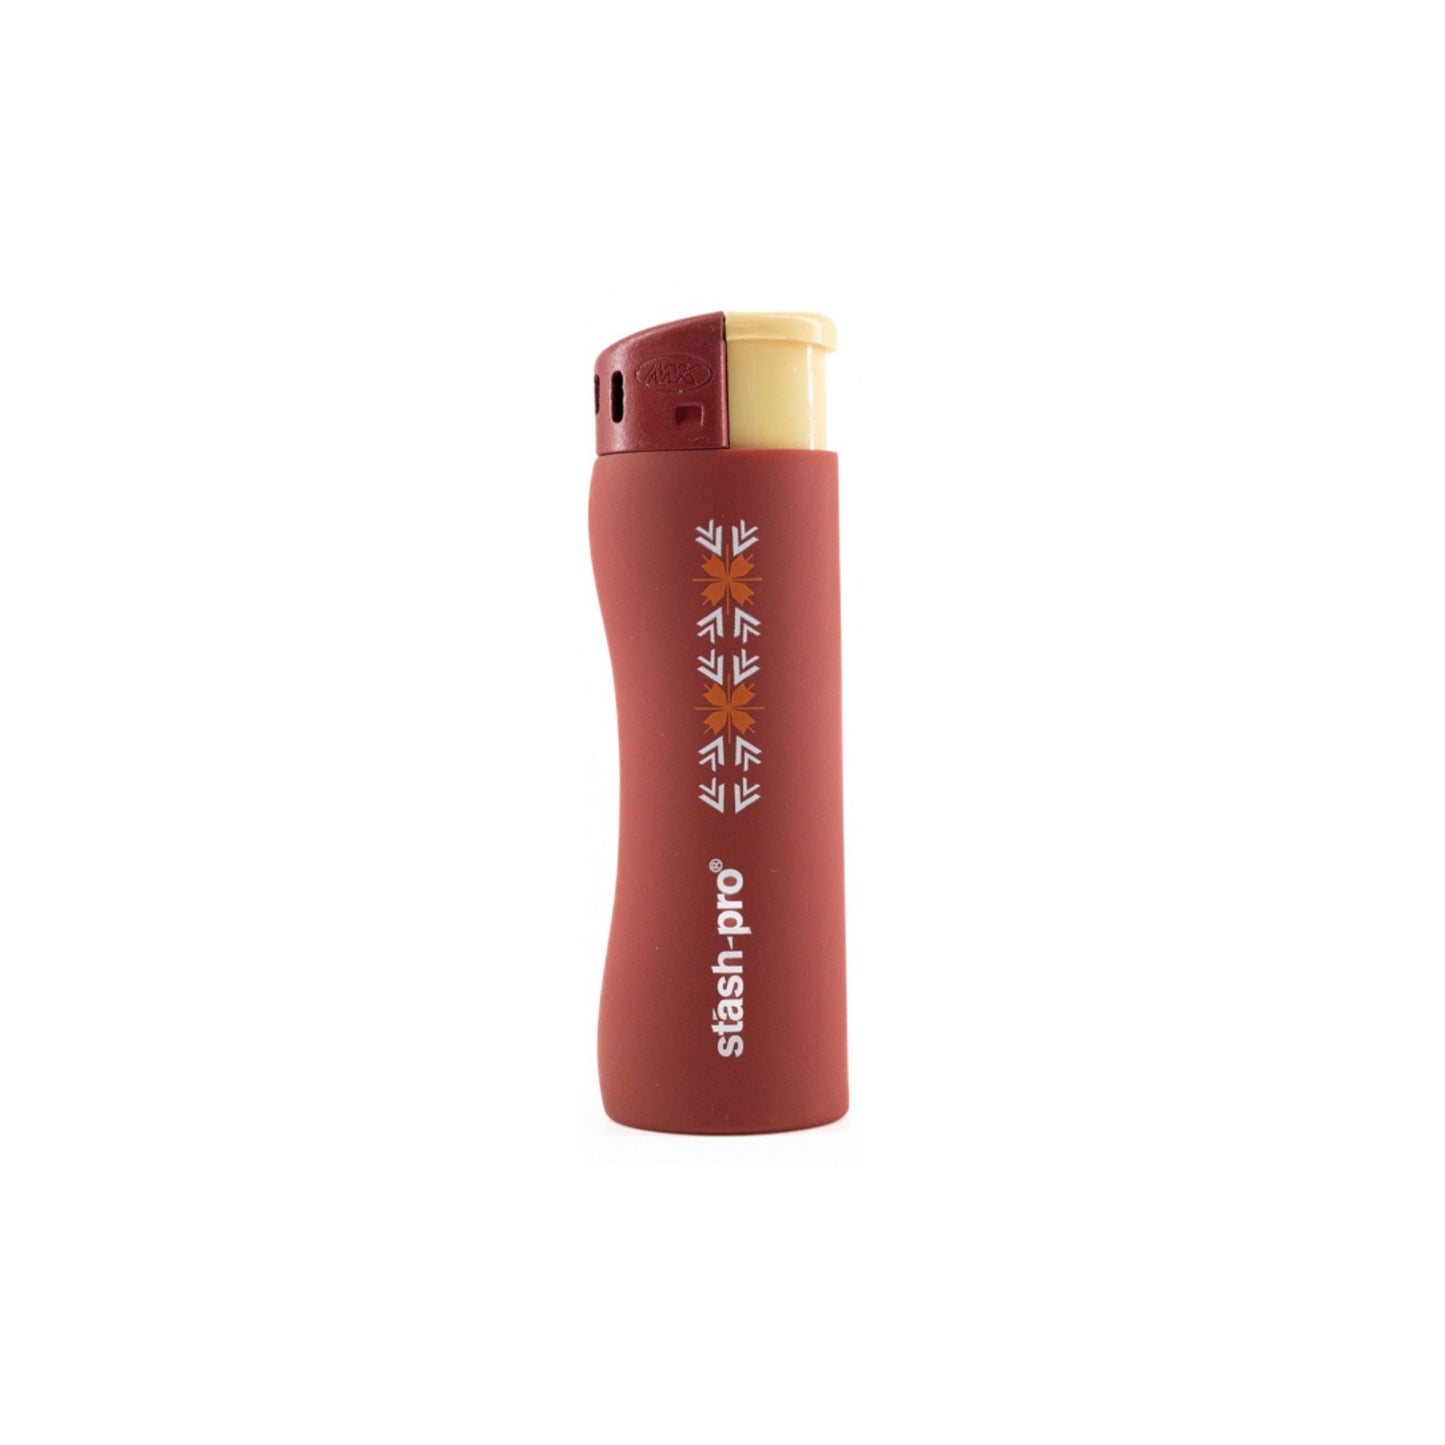 Stash-Pro Pocket Lighter Red